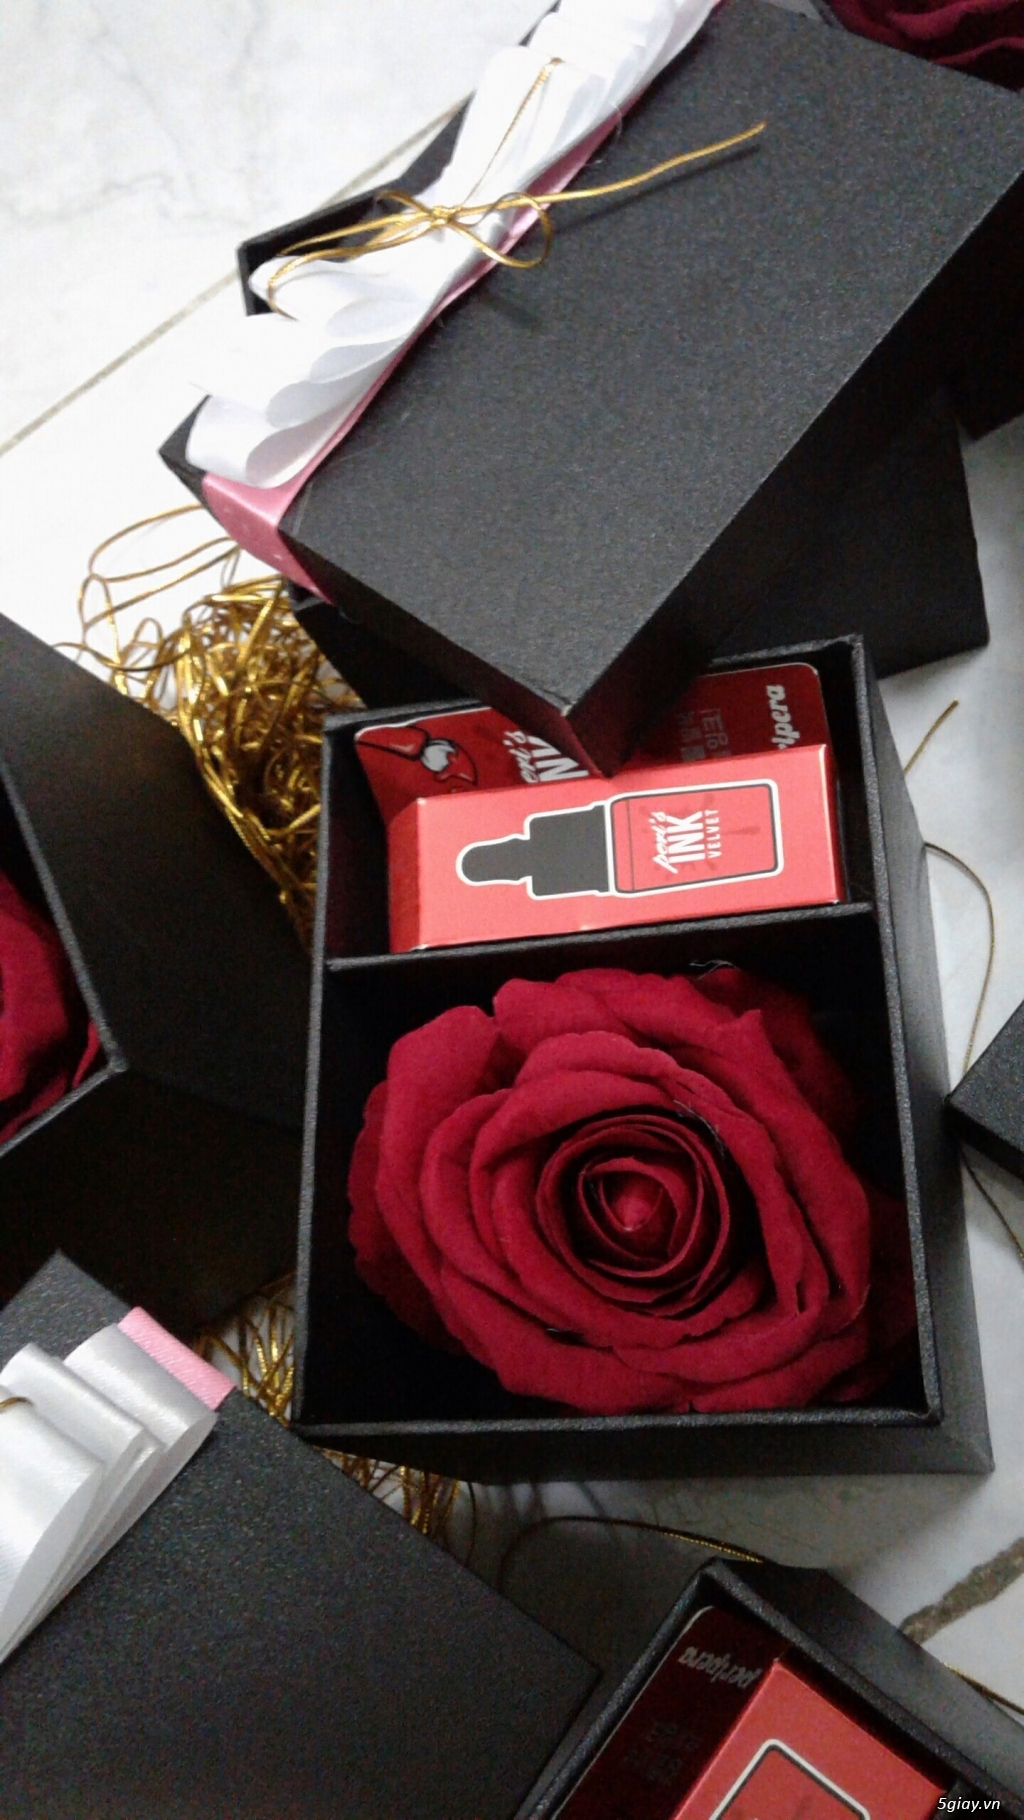 Hộp quà hoa hồng và son đang chờ đón bạn. Tận hưởng mùi hương ngọt ngào và êm dịu từ hoa hồng và đôi môi sáng bóng với son môi của chúng tôi. Đây sẽ là món quà độc đáo và lãng mạn để bạn dành tặng người phụ nữ của mình trong ngày lễ kỷ niệm.